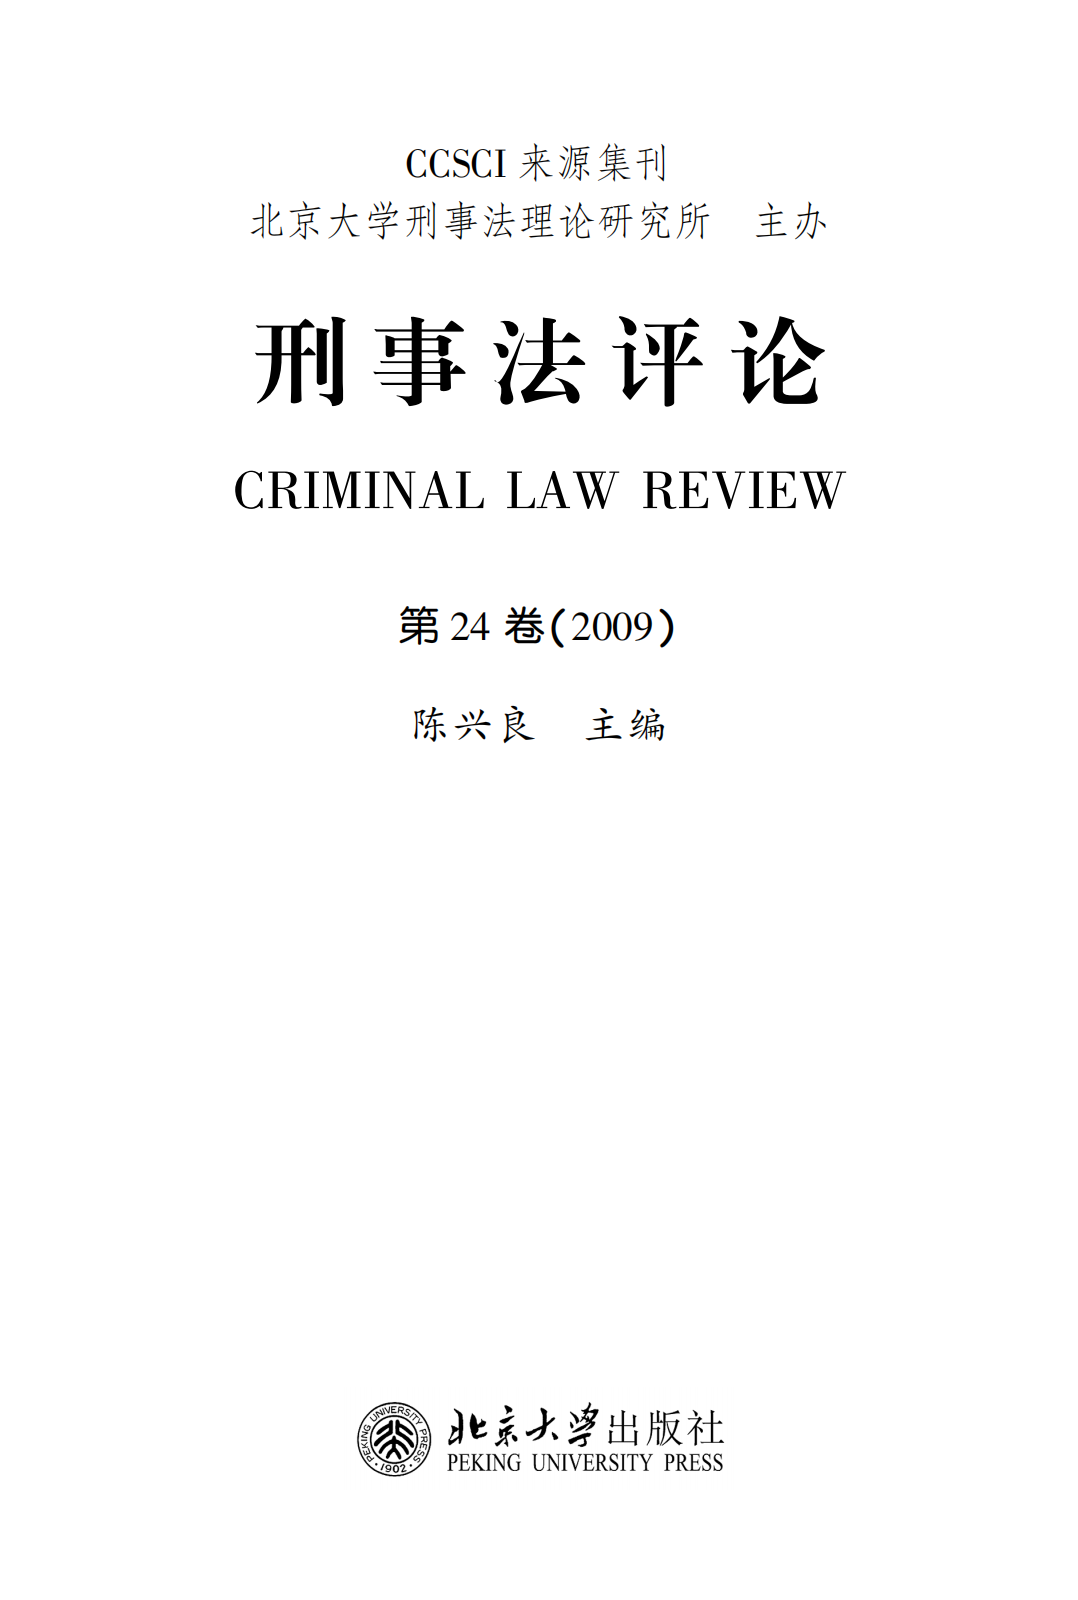 提取自刑事法评论（第24卷）_00.png